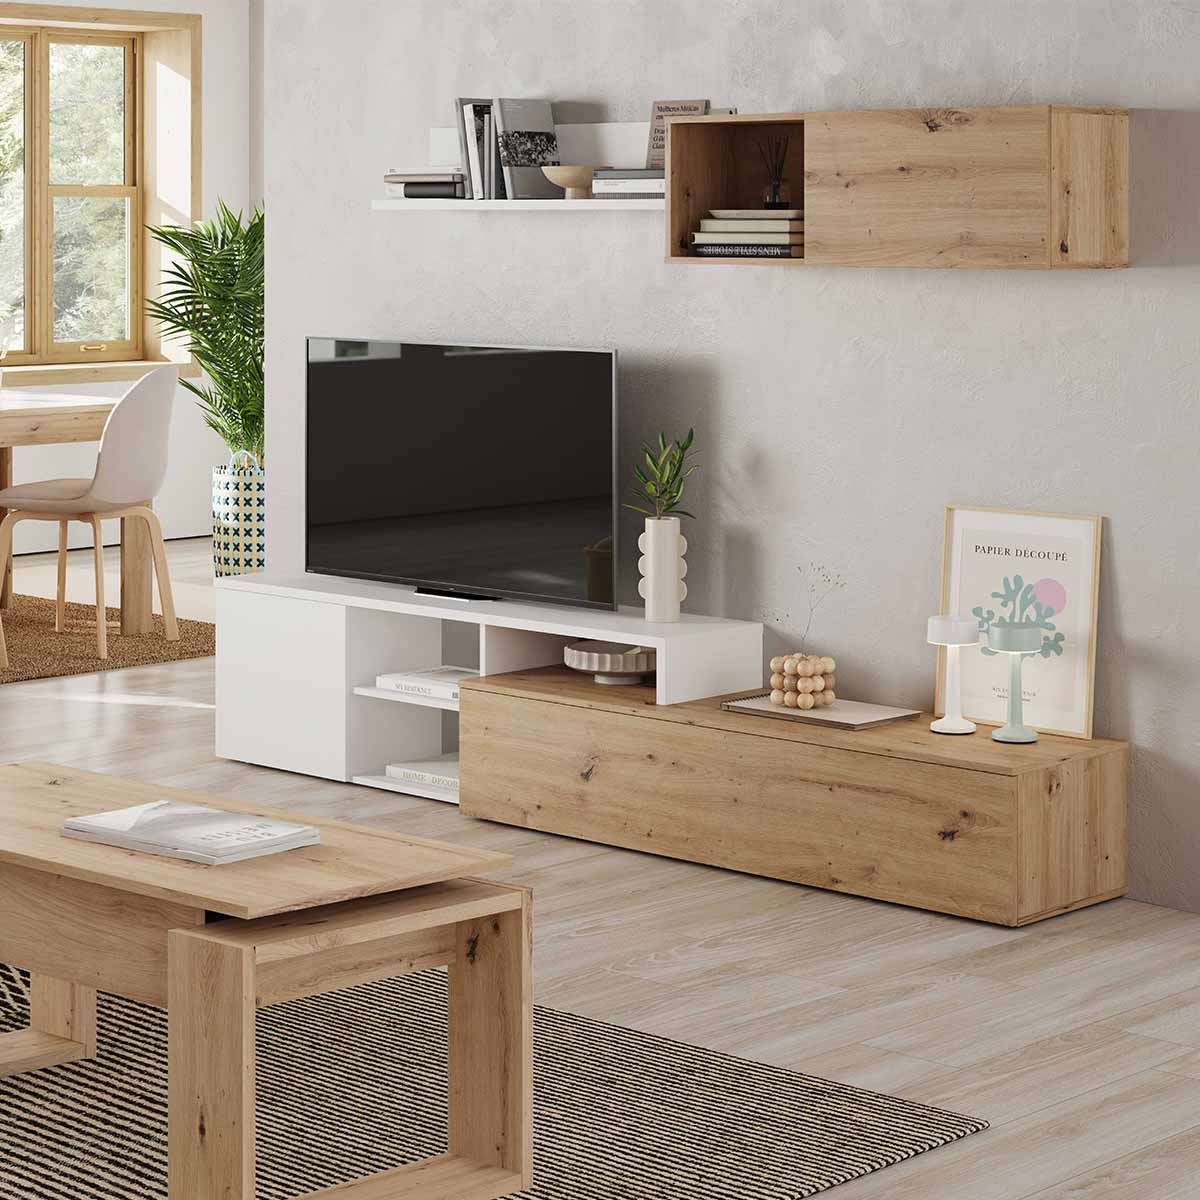 Muebles salón moderno Argos mesa tv + aparador + estantería